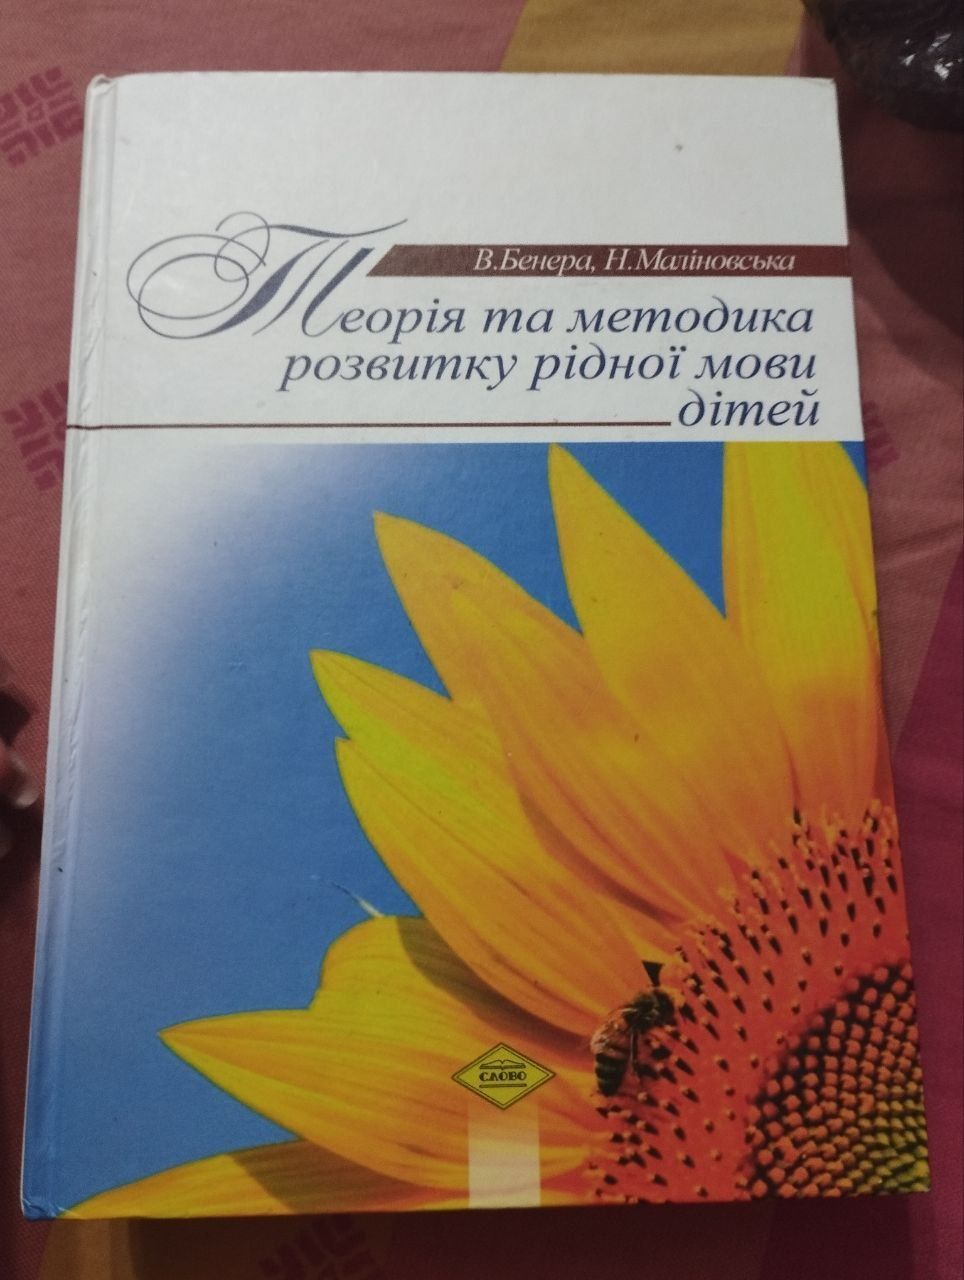 Книга з дошкільного виховання (100 грн)